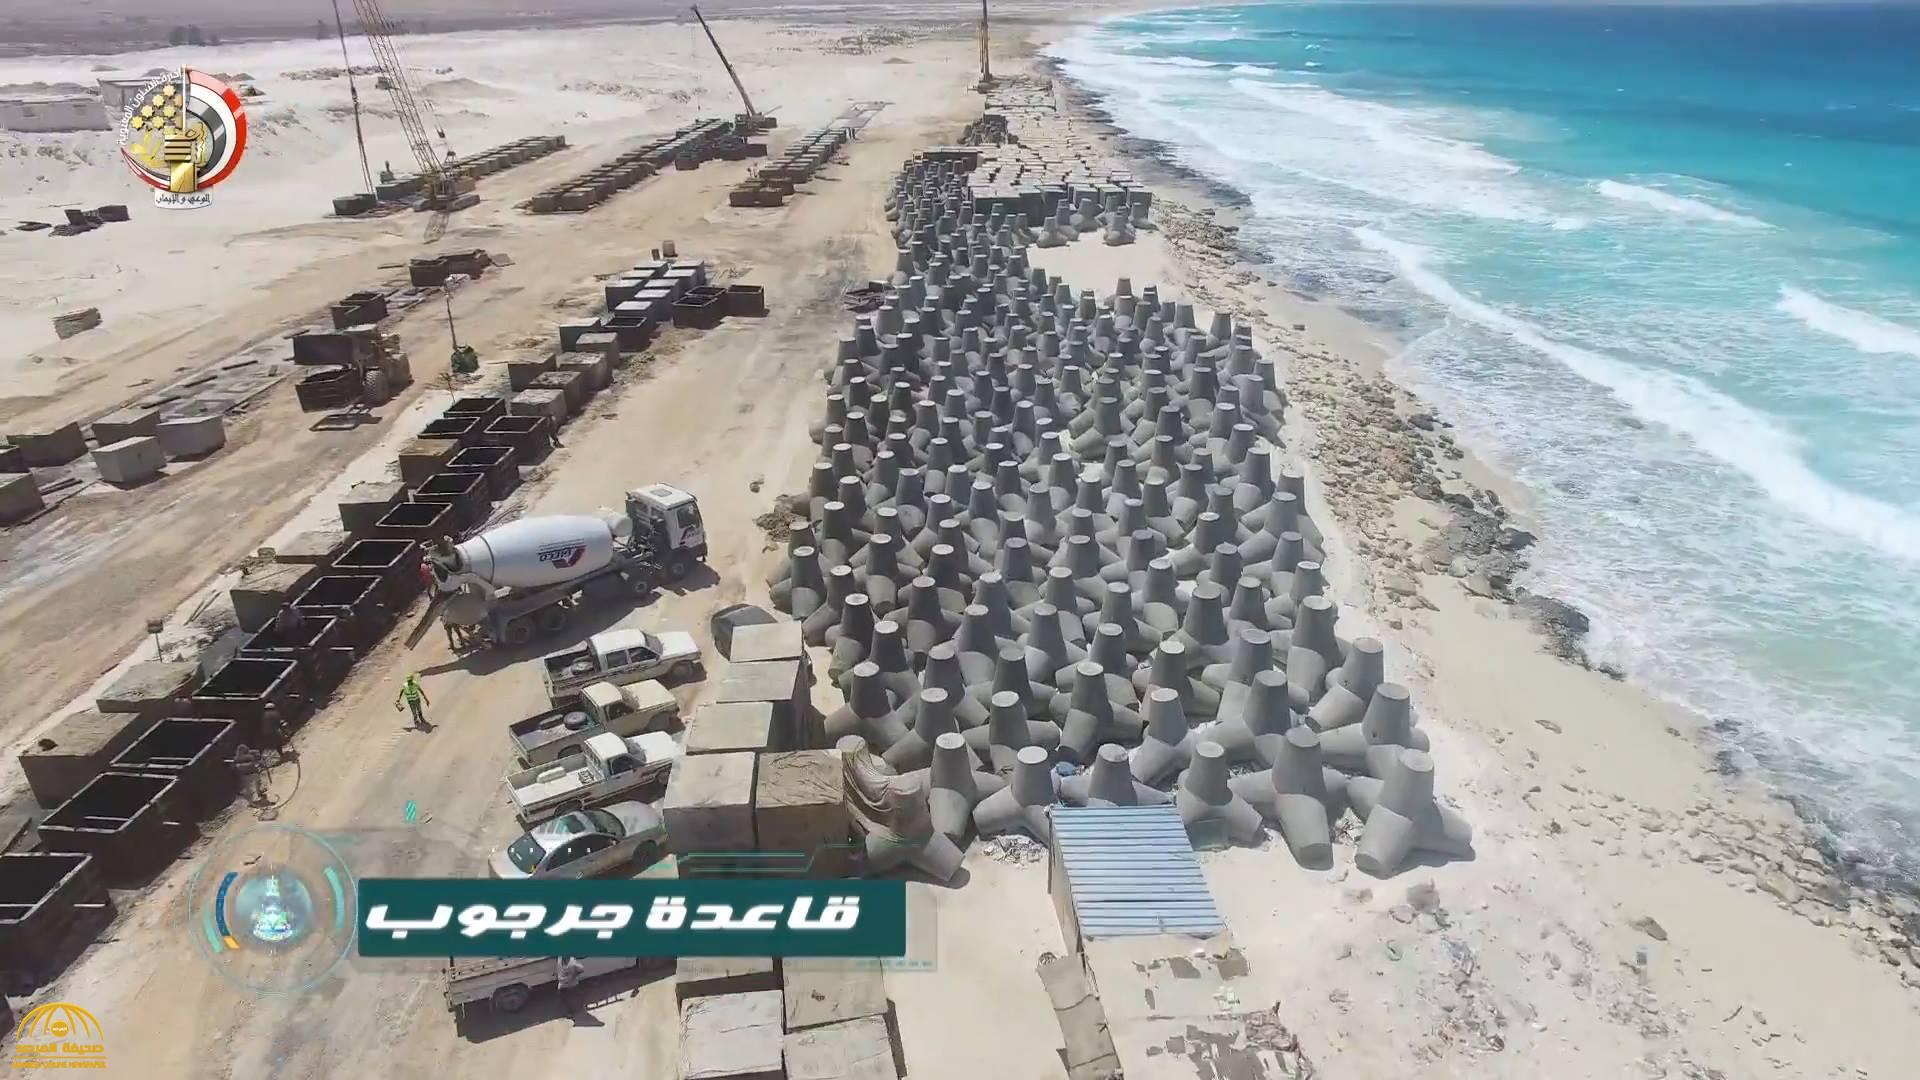 بالصور: مصر تعلن عن إنشاء قاعدة عسكرية قرب الحدود الليبية